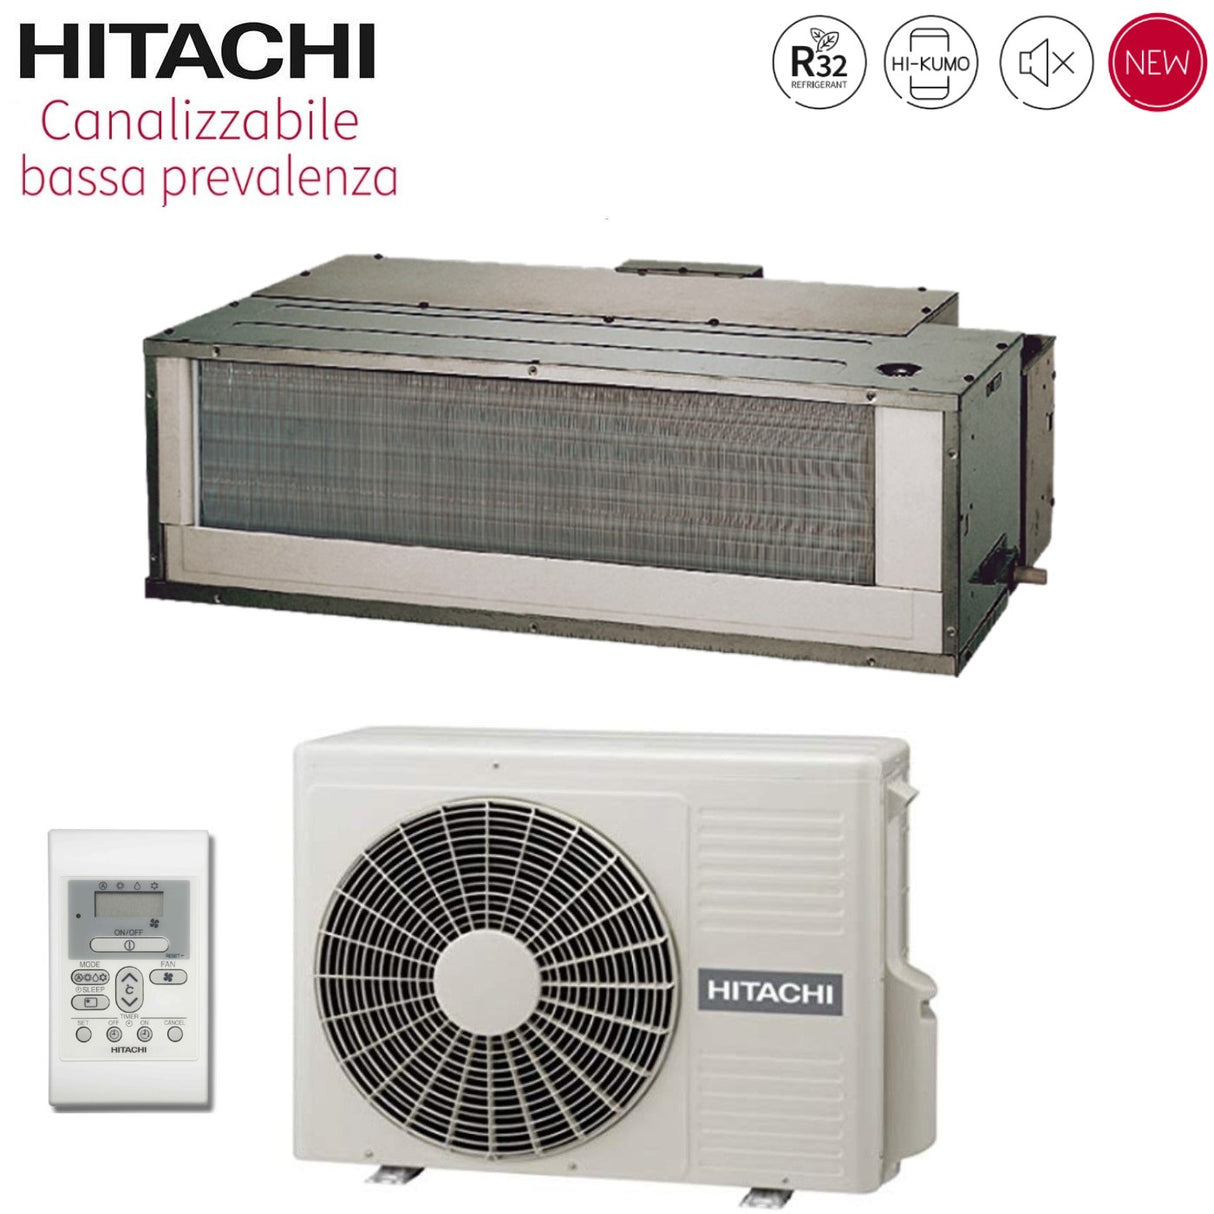 immagine-1-hitachi-climatizzatore-condizionatore-hitachi-inverter-canalizzato-bassa-prevalenza-9000-btu-rad-25rpe-r-32-wi-fi-optional-con-comando-a-parete-novita